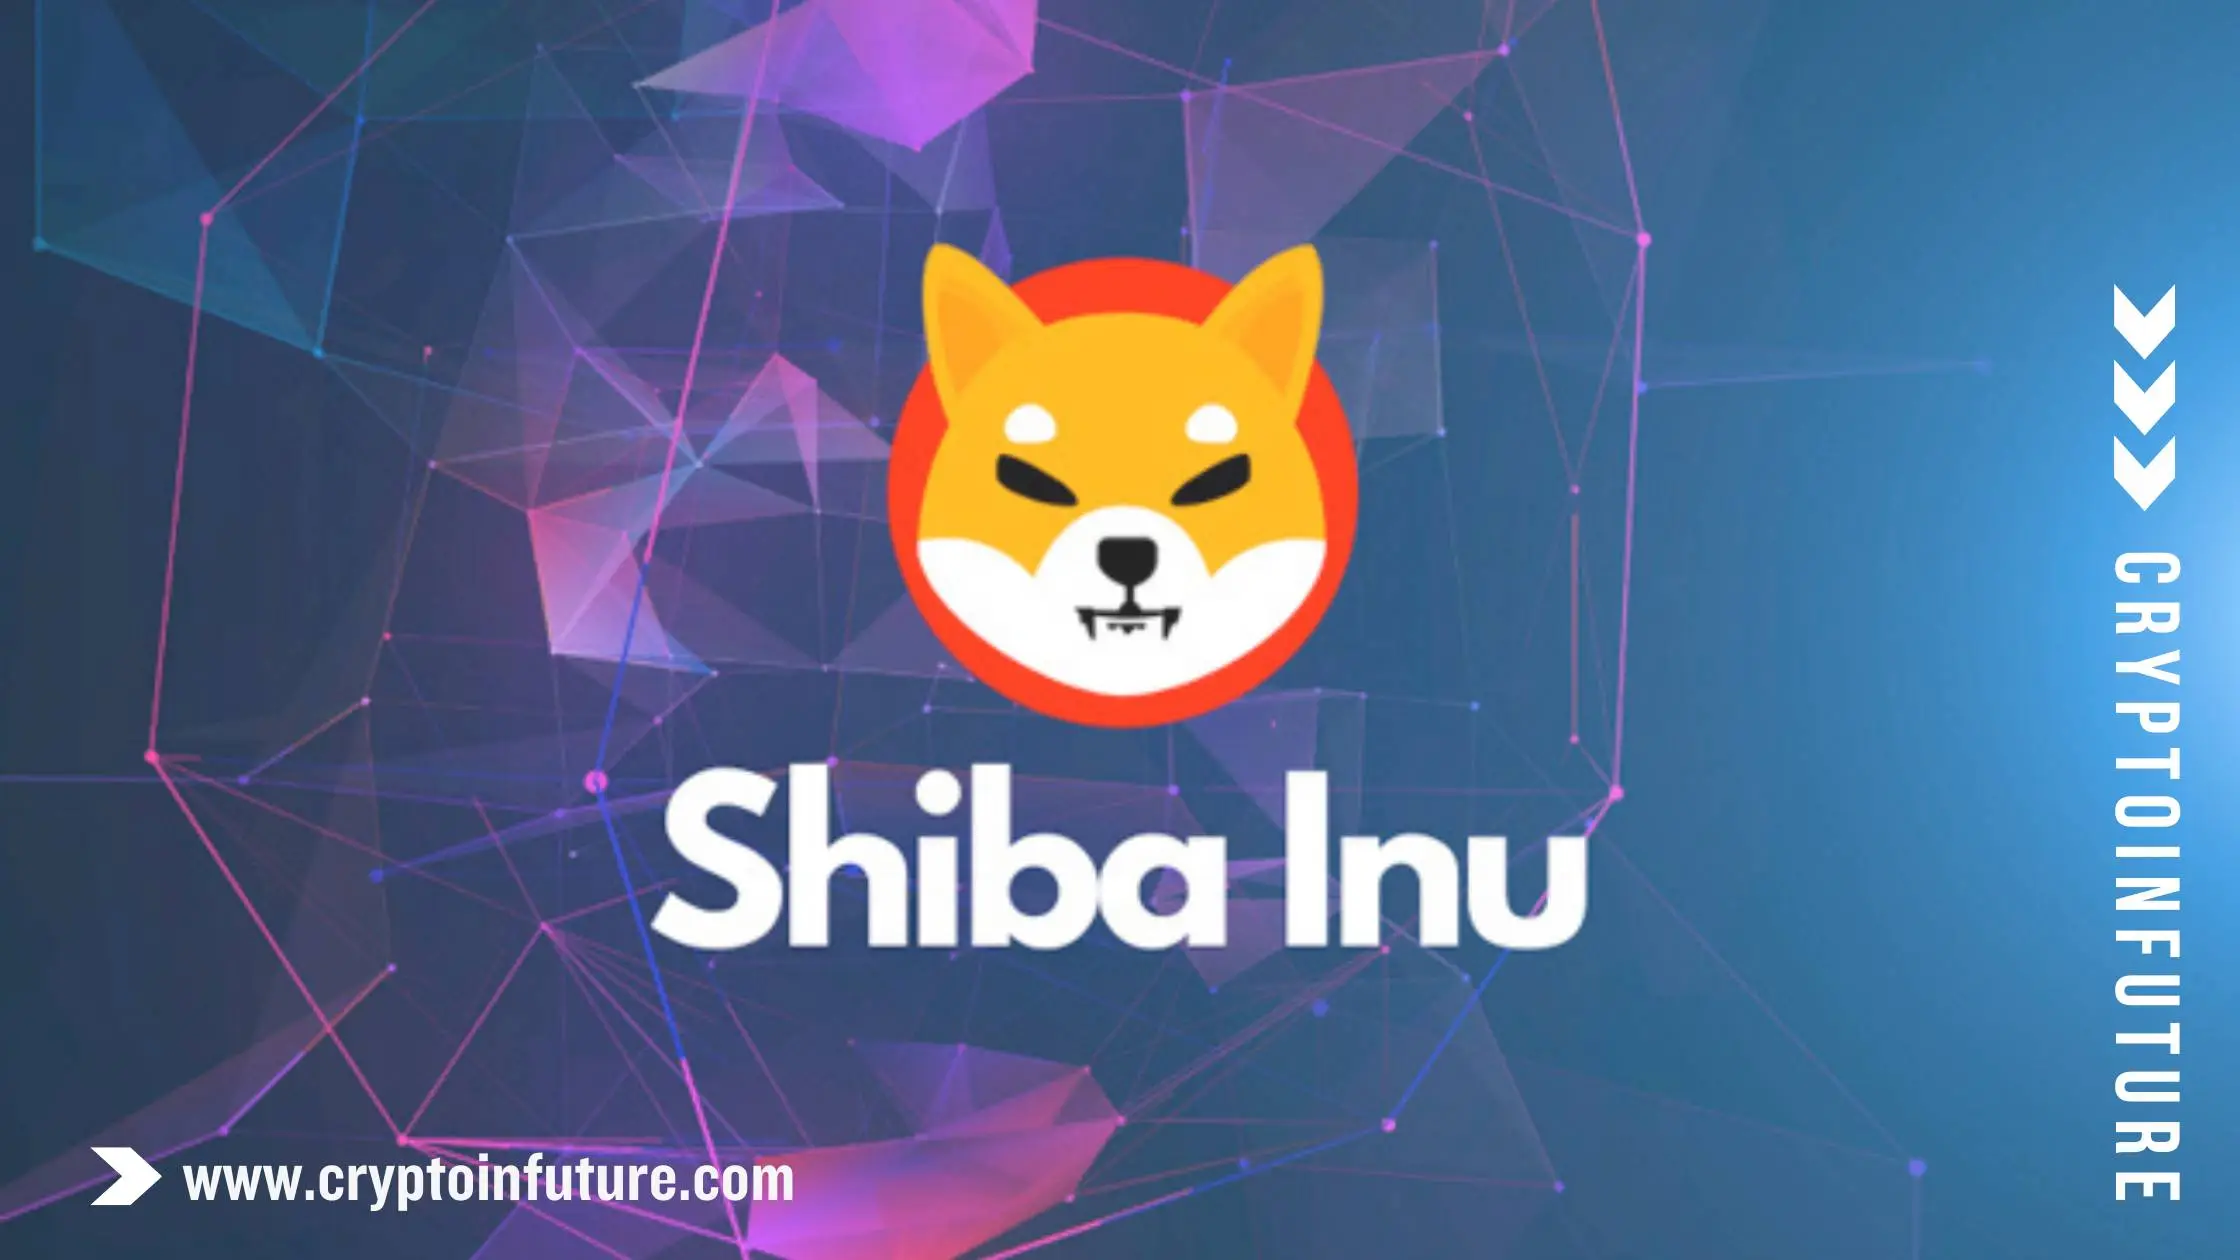 About Shiba Inu